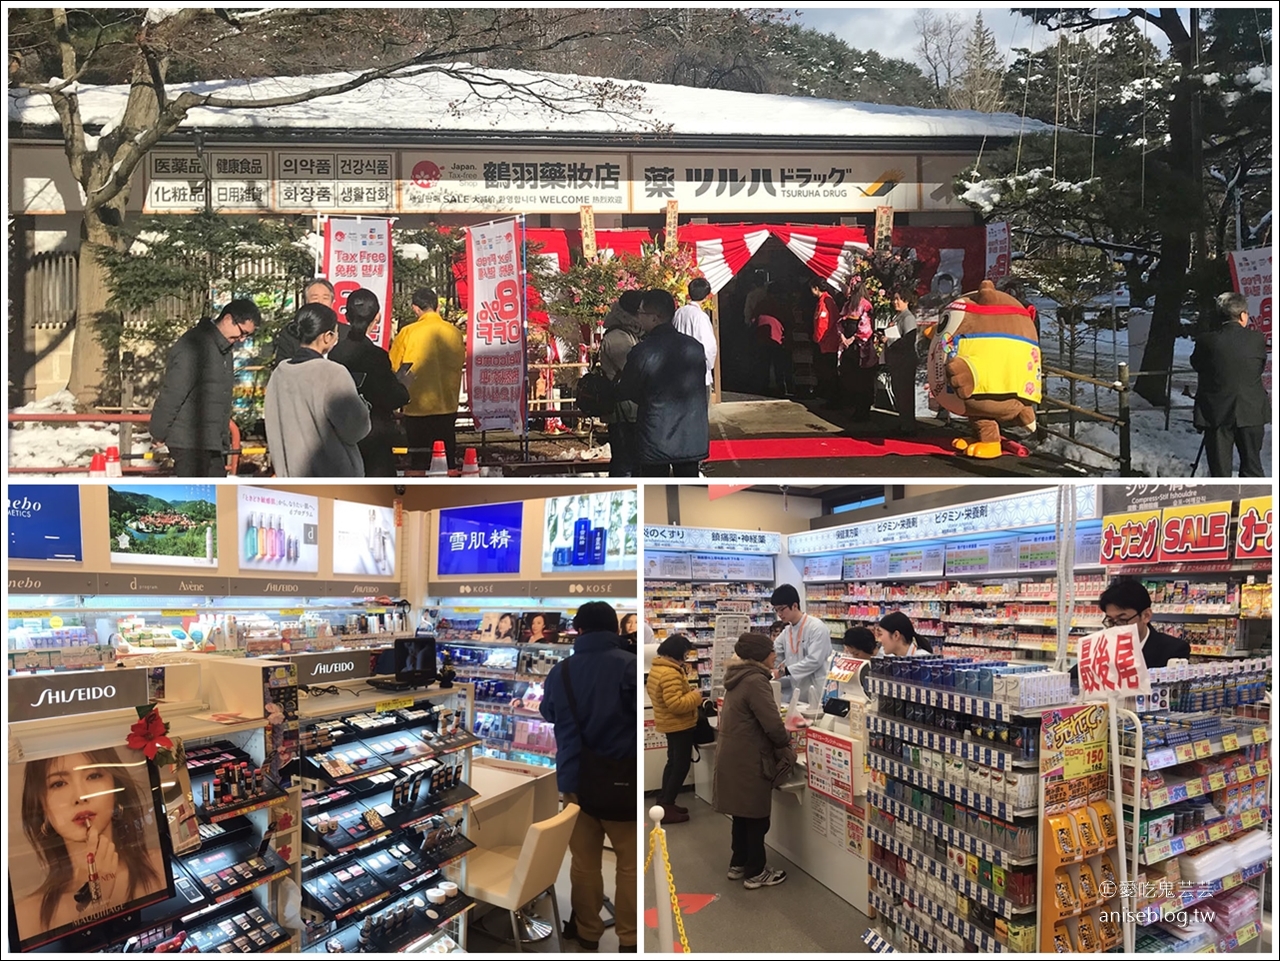 日本東北孝親之旅 | 泡湯、美食、鐵道、遊船冬季小旅行 @易遊網